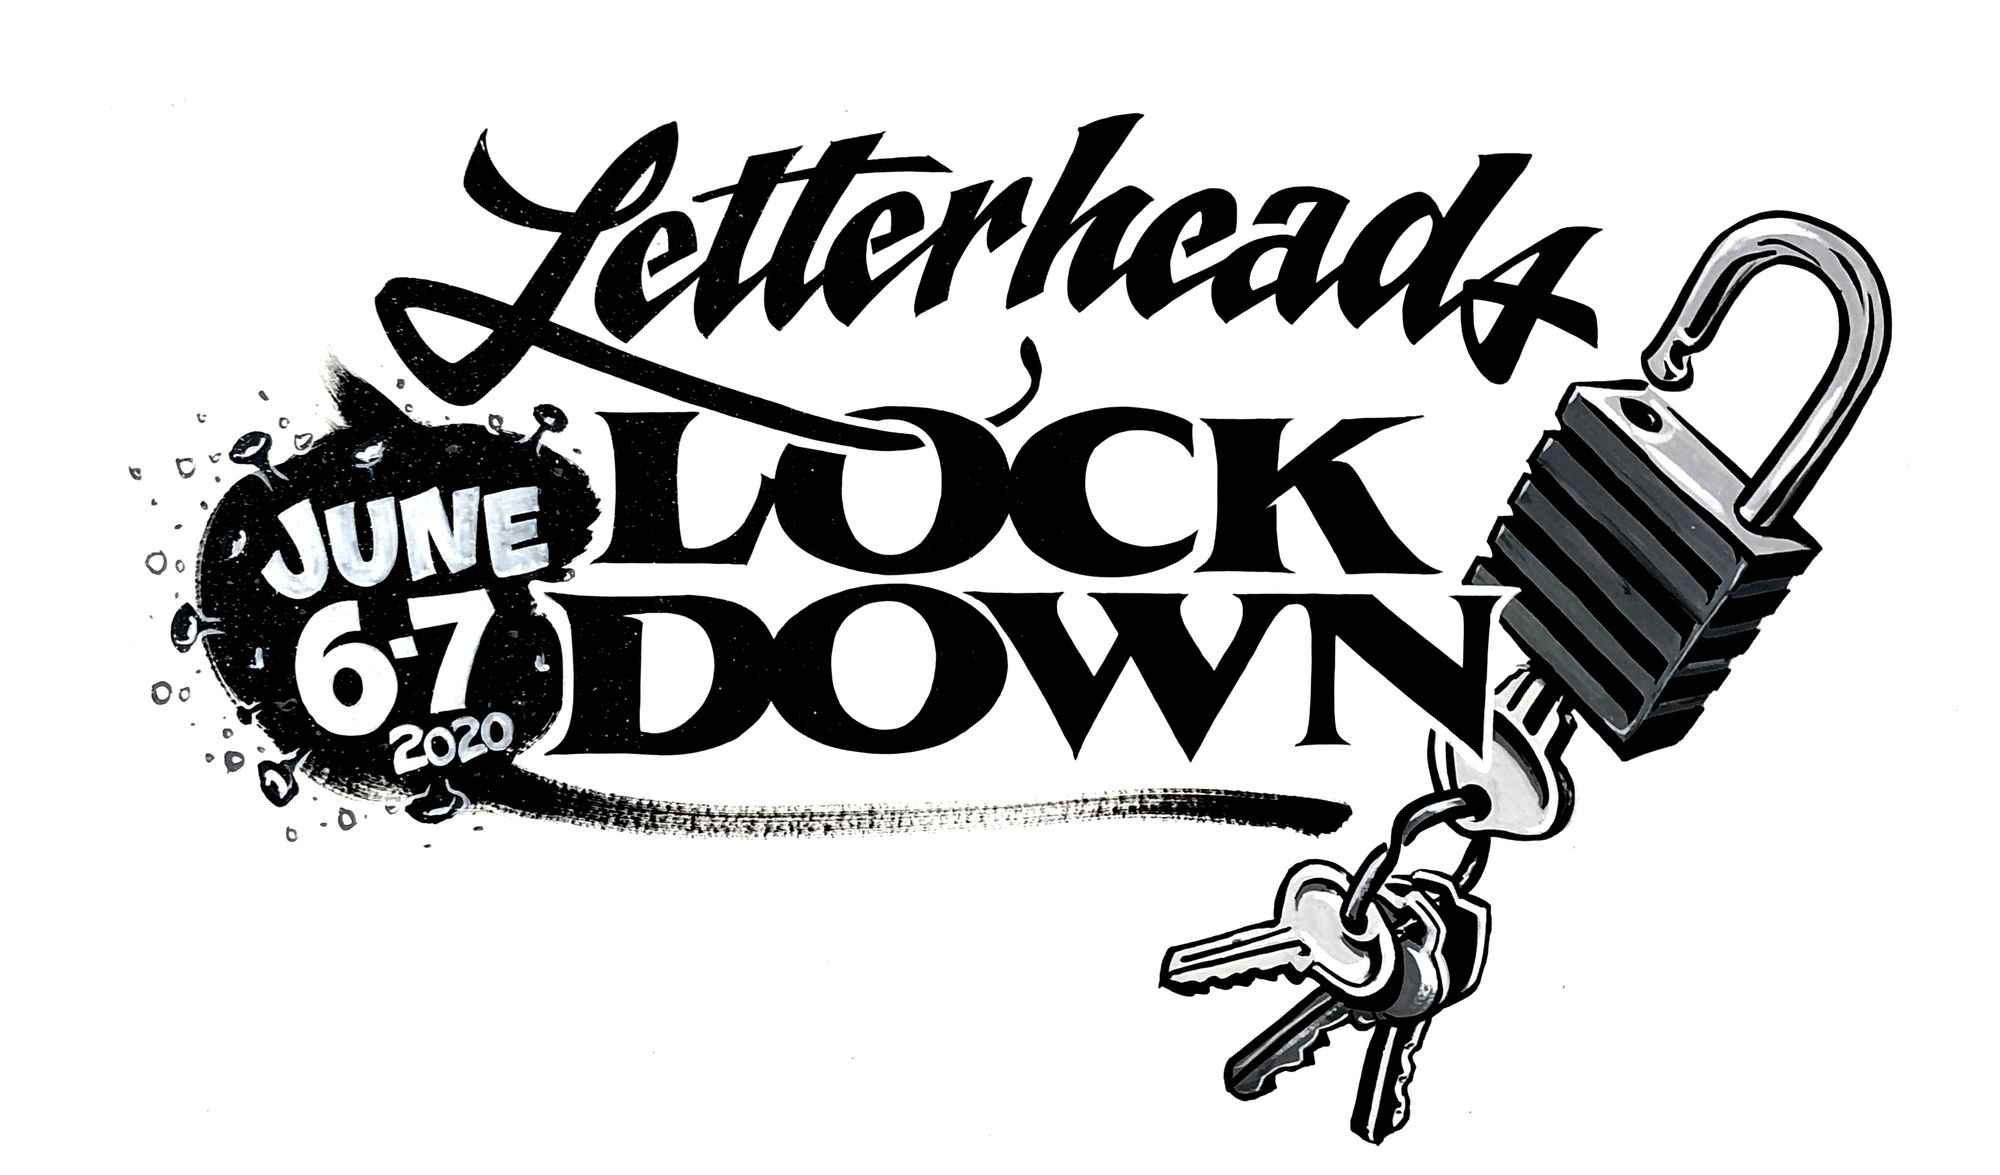 Hand-lettered artwork reading 'Letterheads Lockdown, June 6–7 2020' alongside an illustration of a padlock and keys.